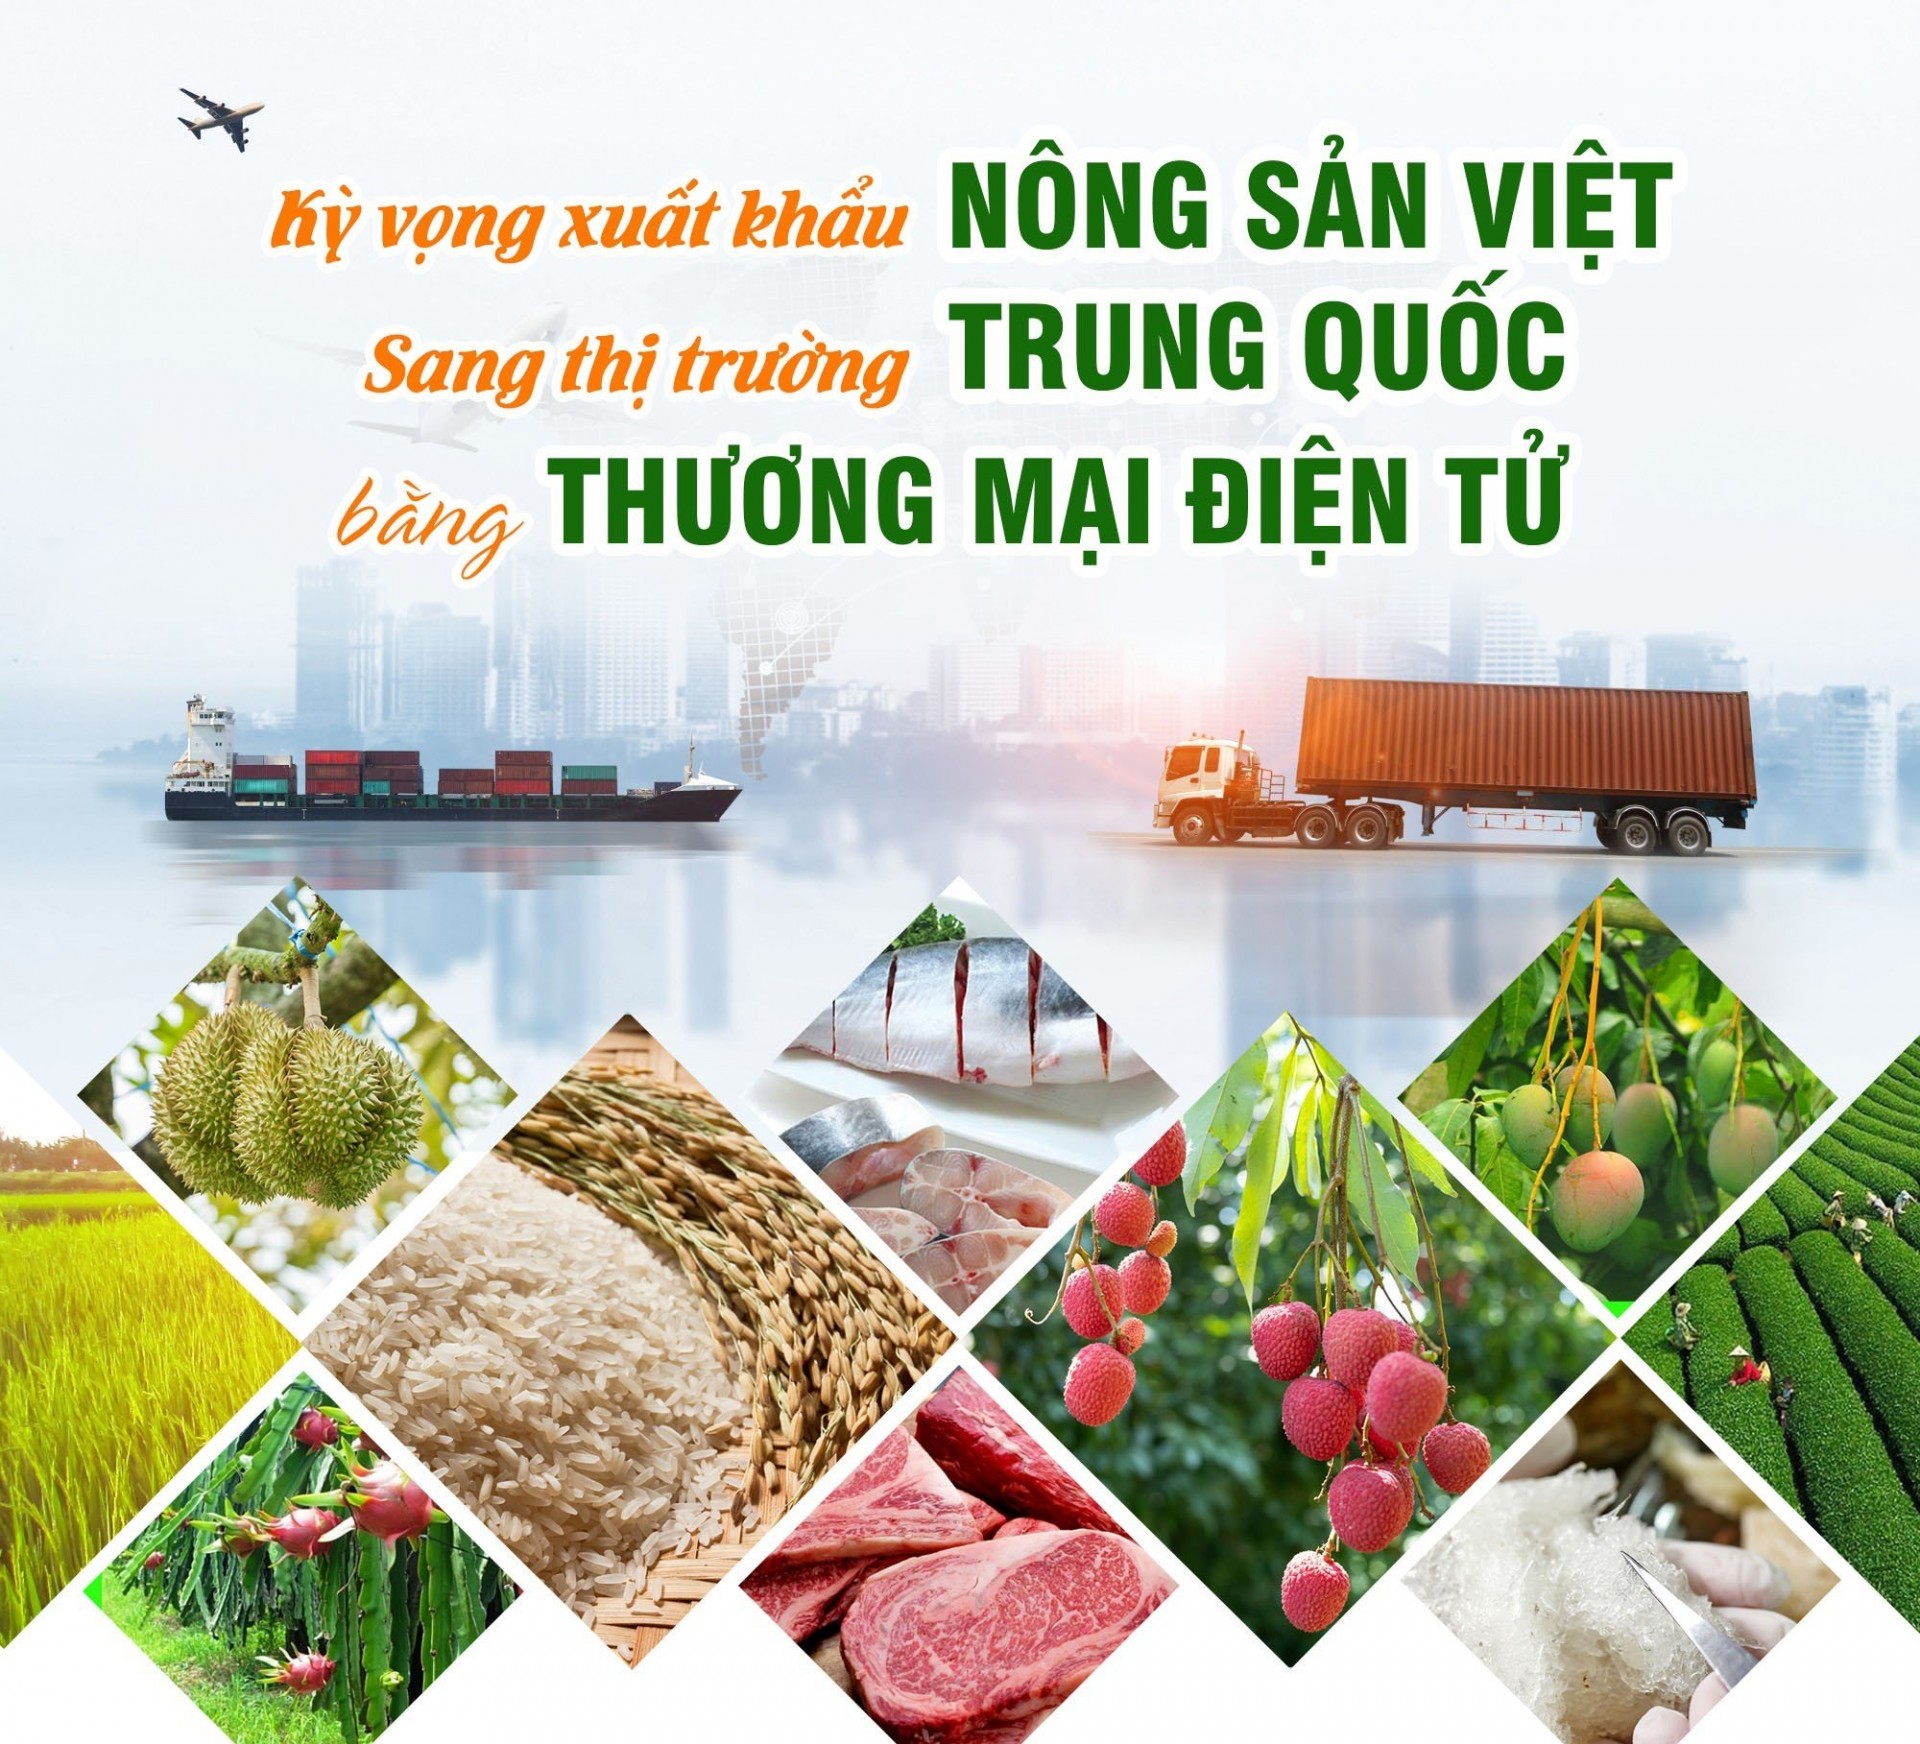 Kỳ vọng xuất khẩu nông sản Việt sang thị trường Trung Quốc bằng thương mại điện tử.